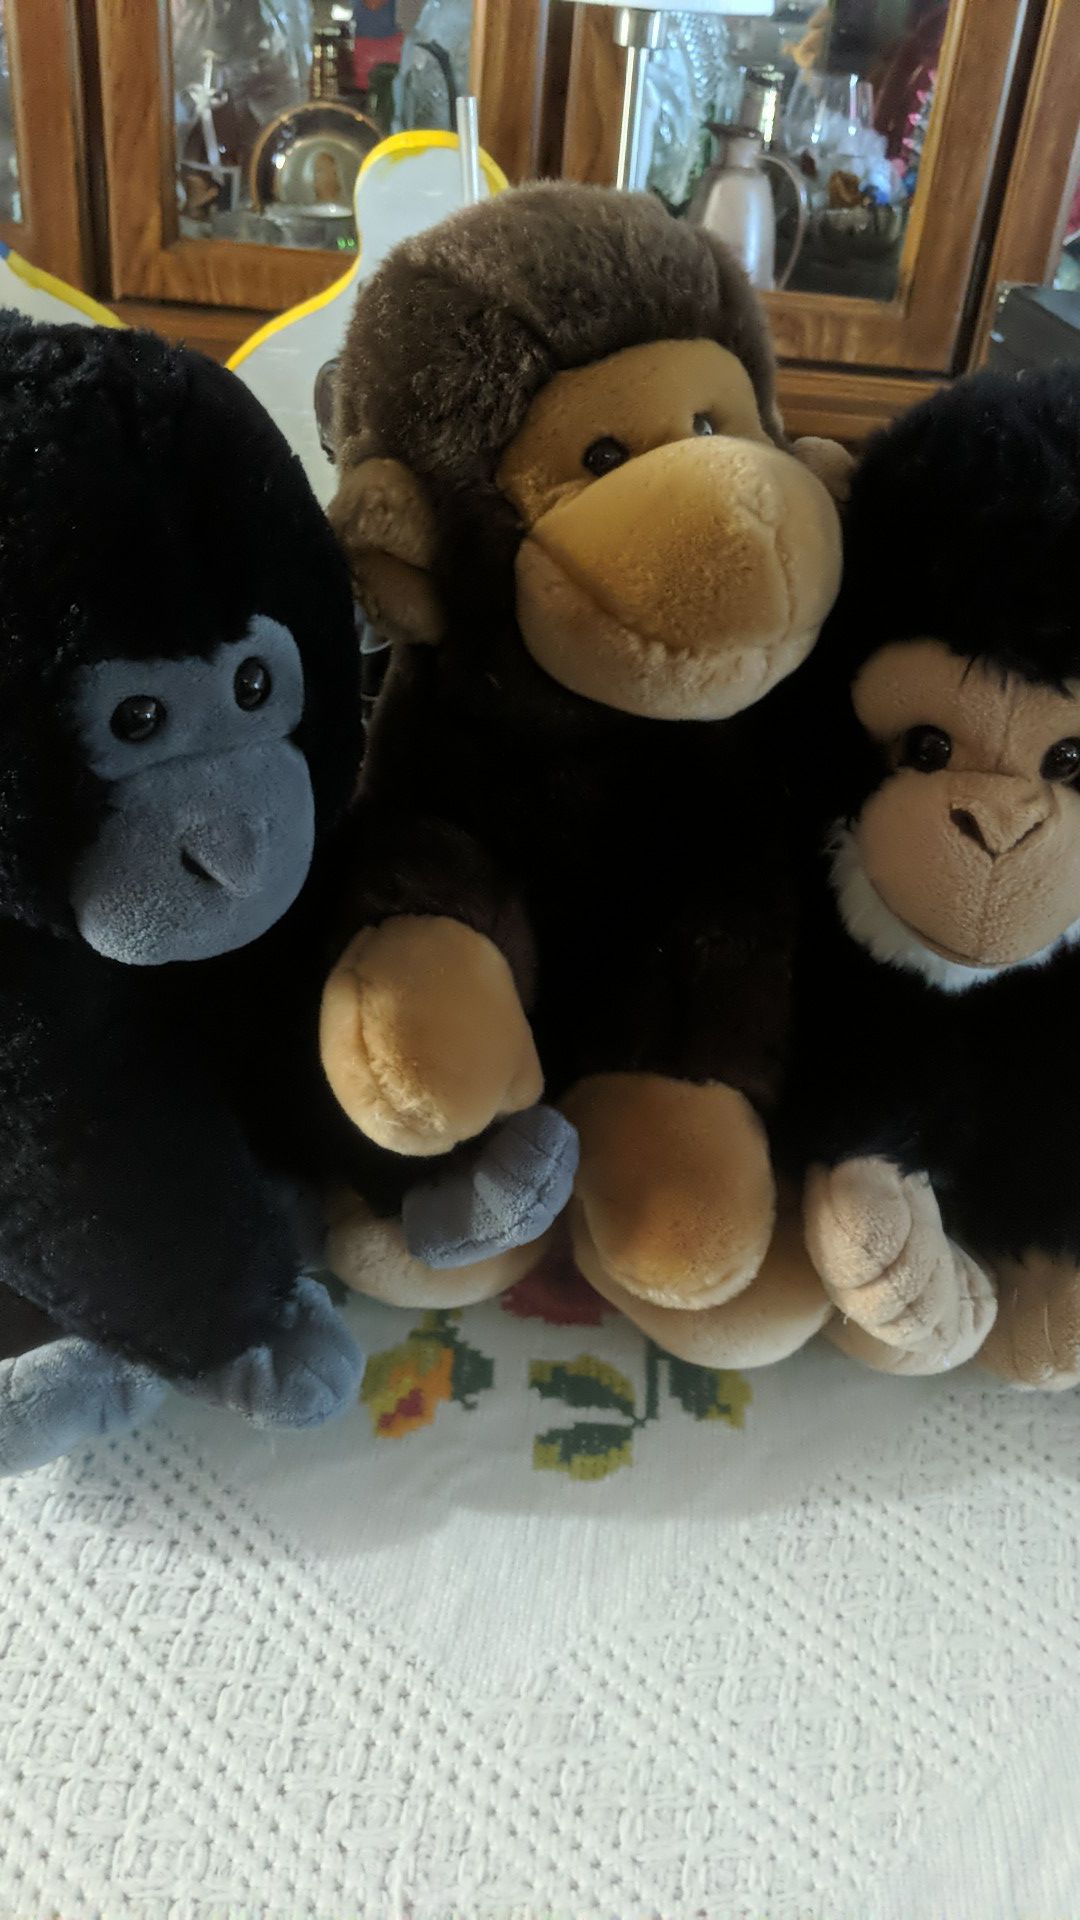 Monkey stuffed animals